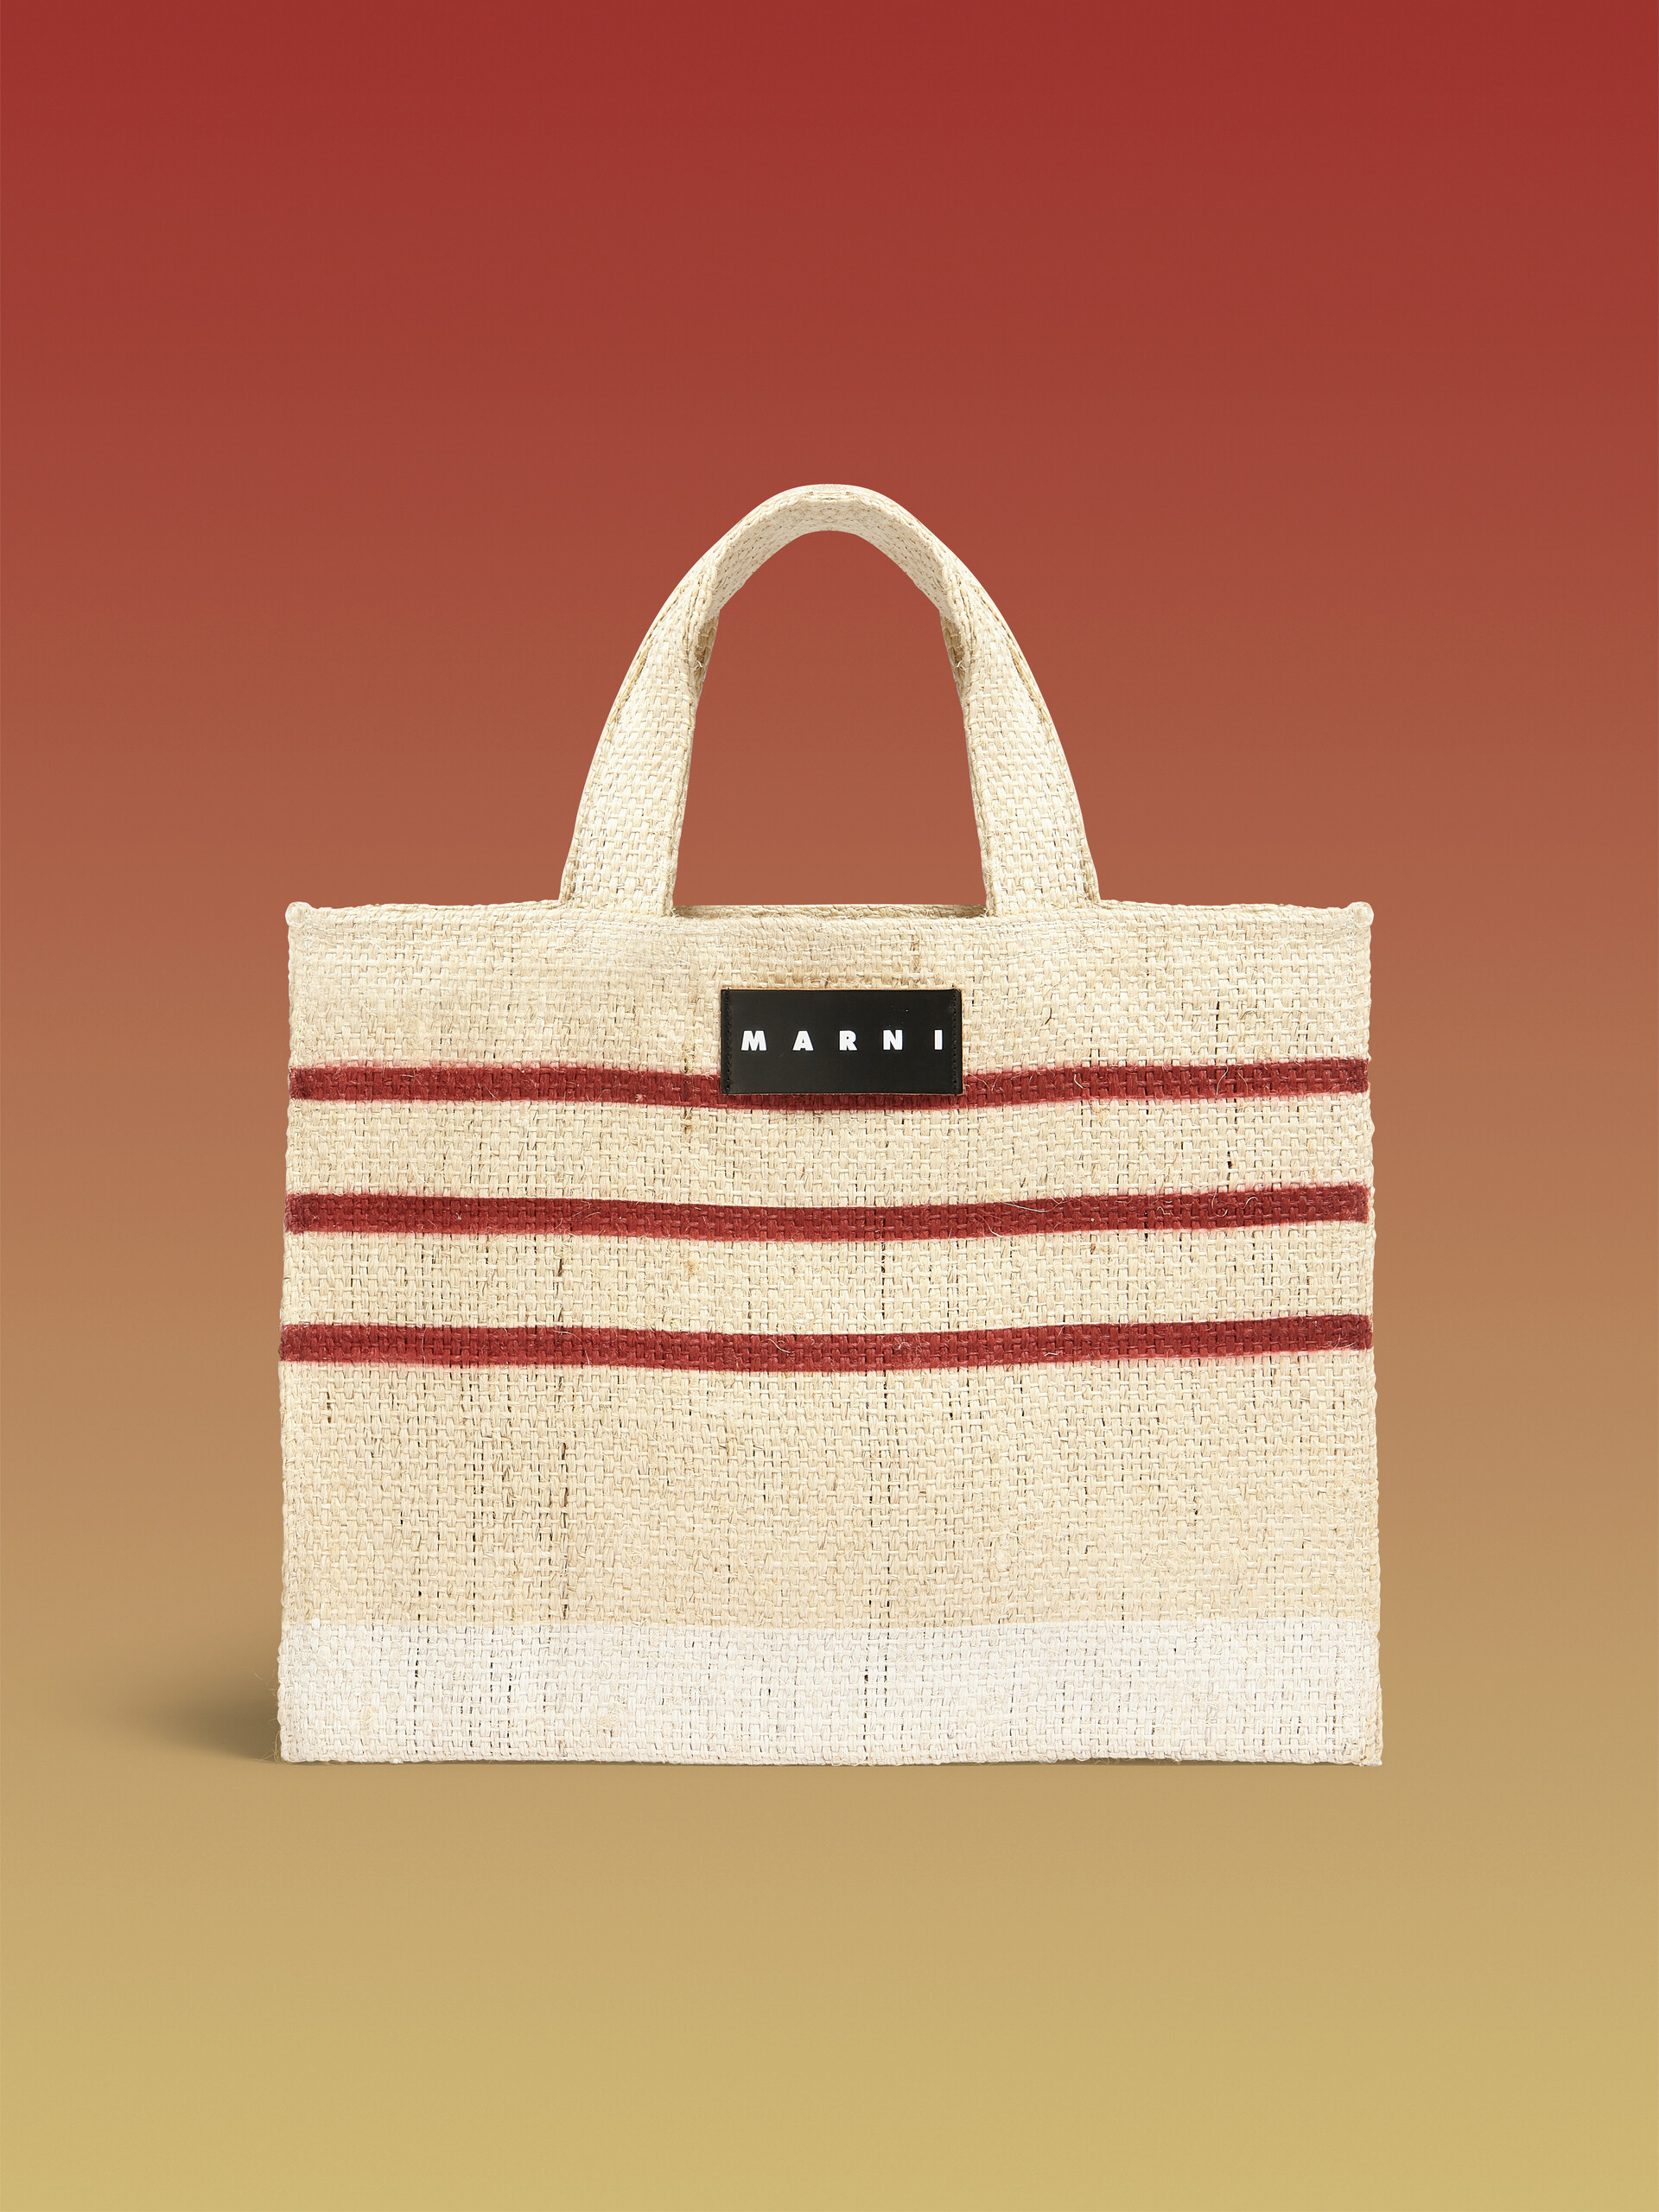 MARNI MARKET CANAPA small bag in black and orange natural fiber - Shopping Bags - Image 1